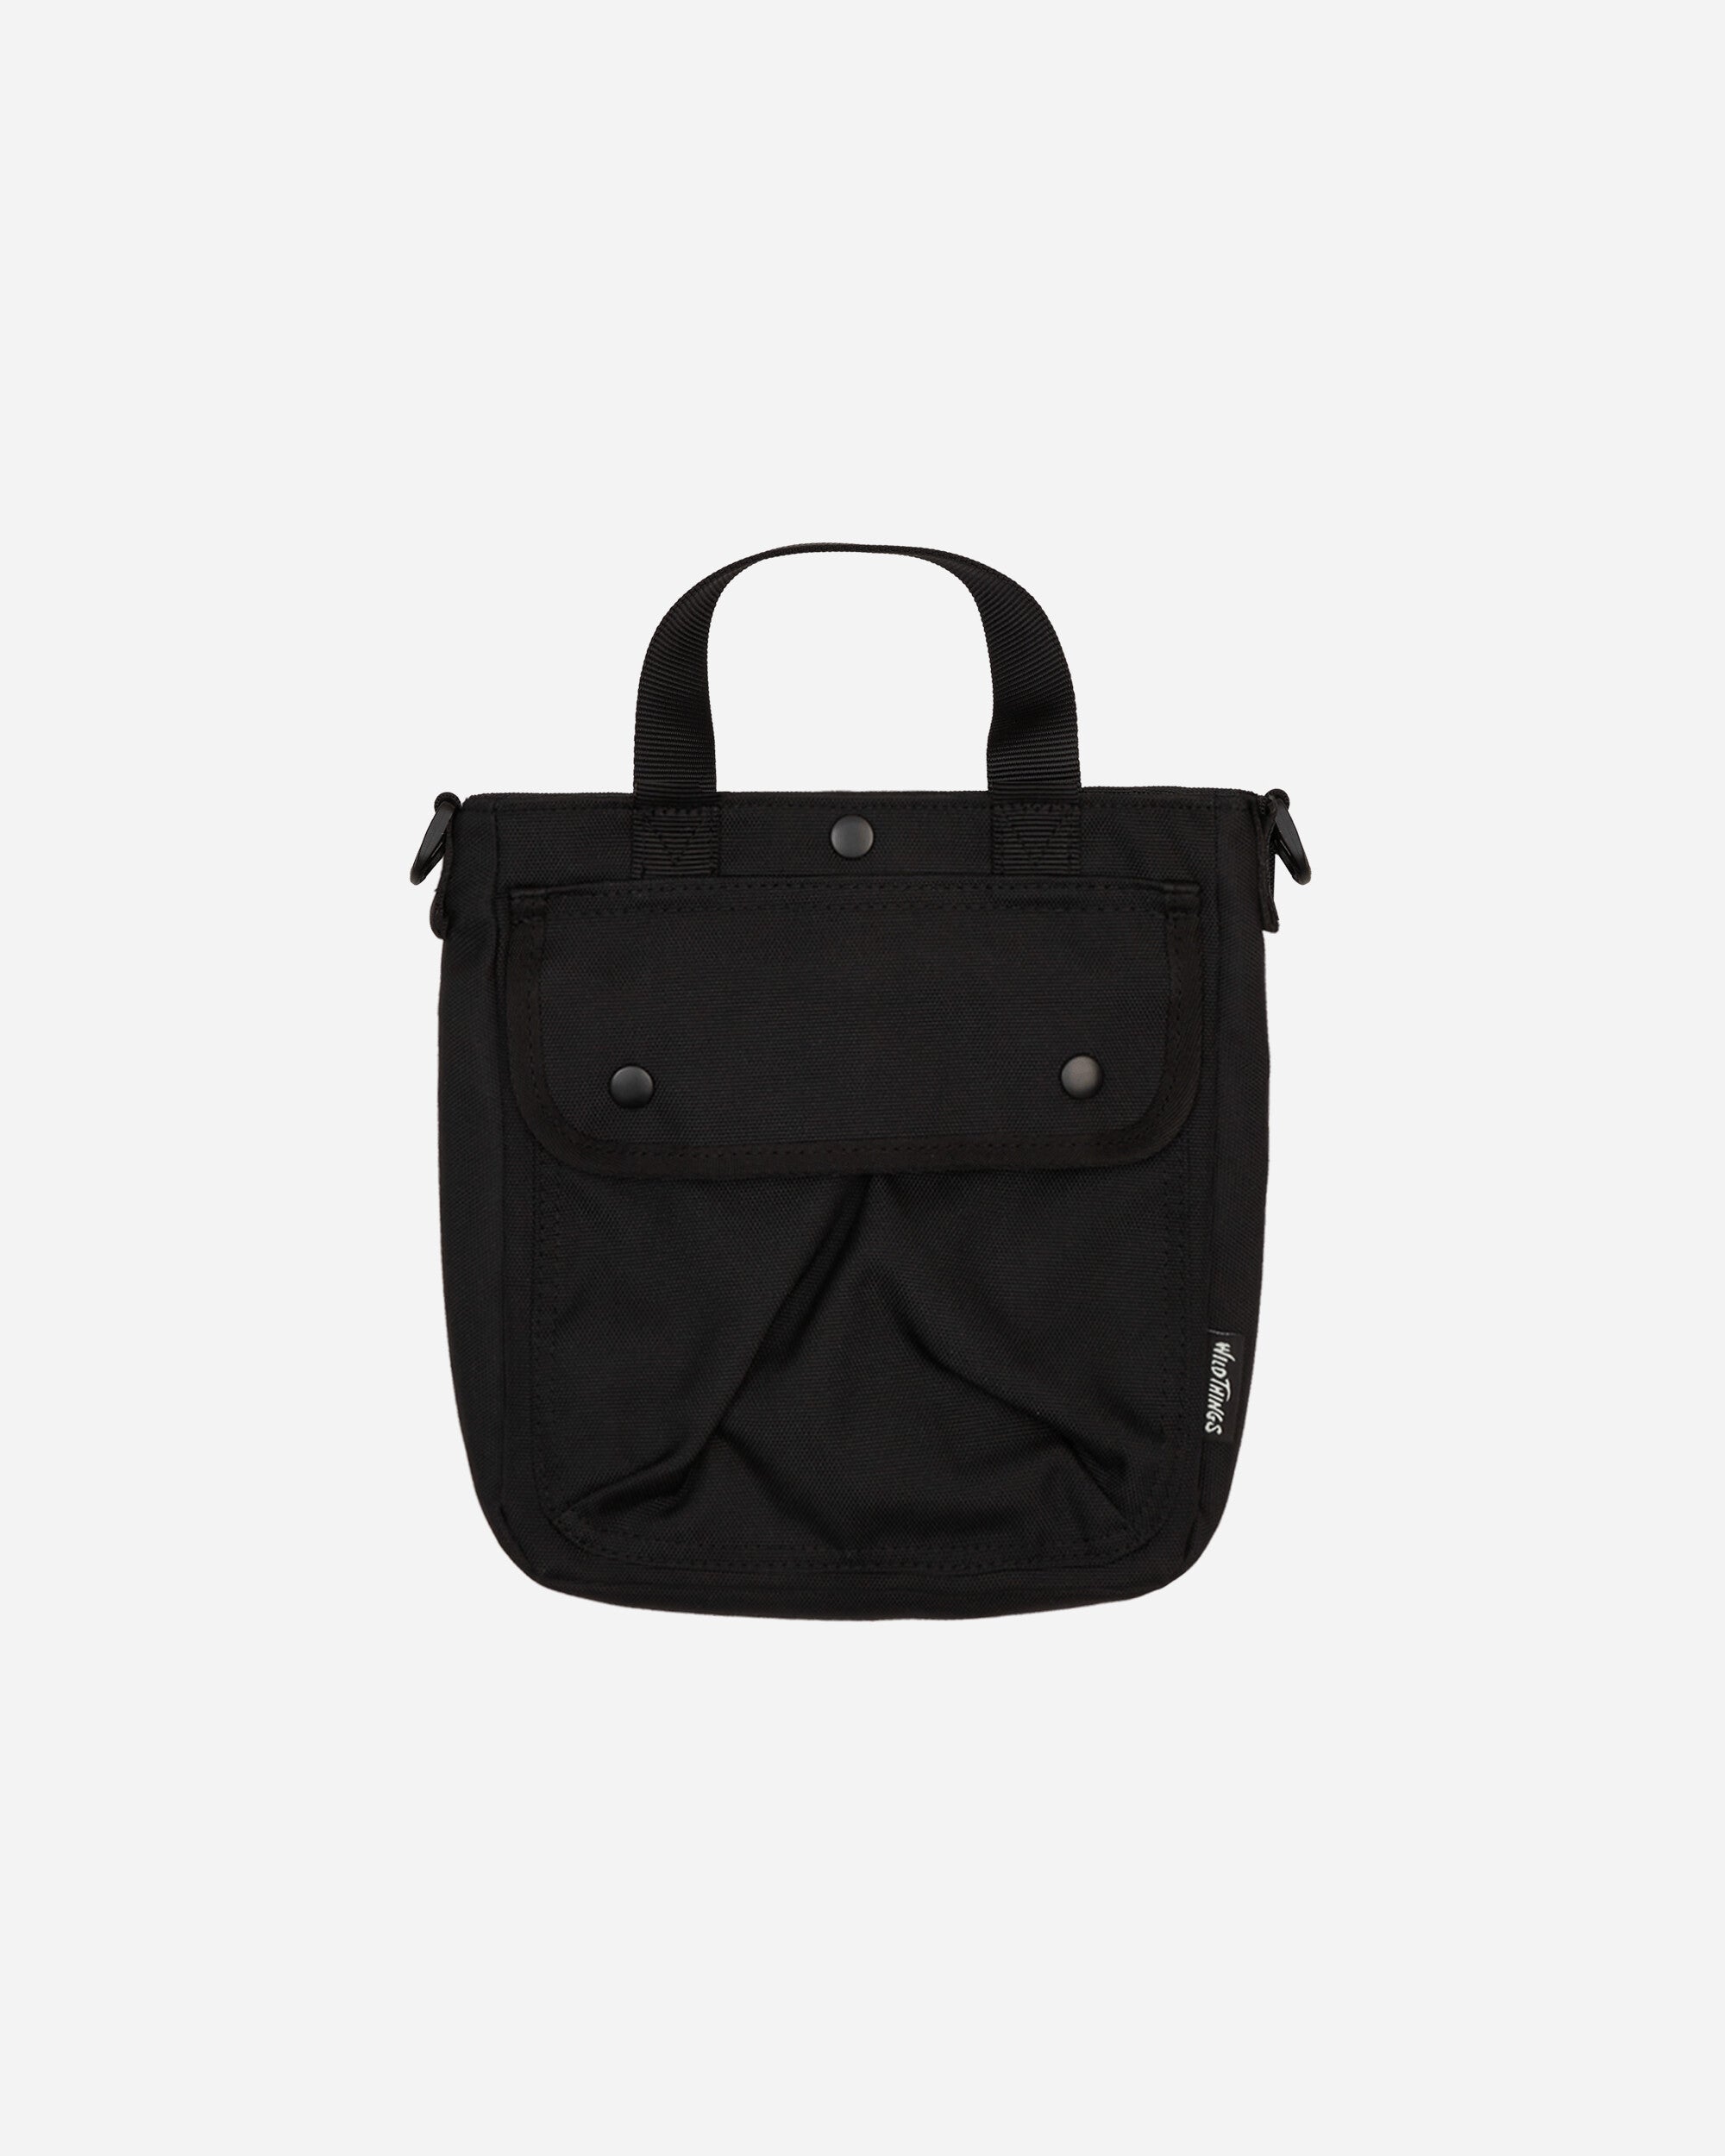 Wild Things New Cordura 2Way Shoulder Black Bags and Backpacks Shoulder Bags WT232-31 BLACK